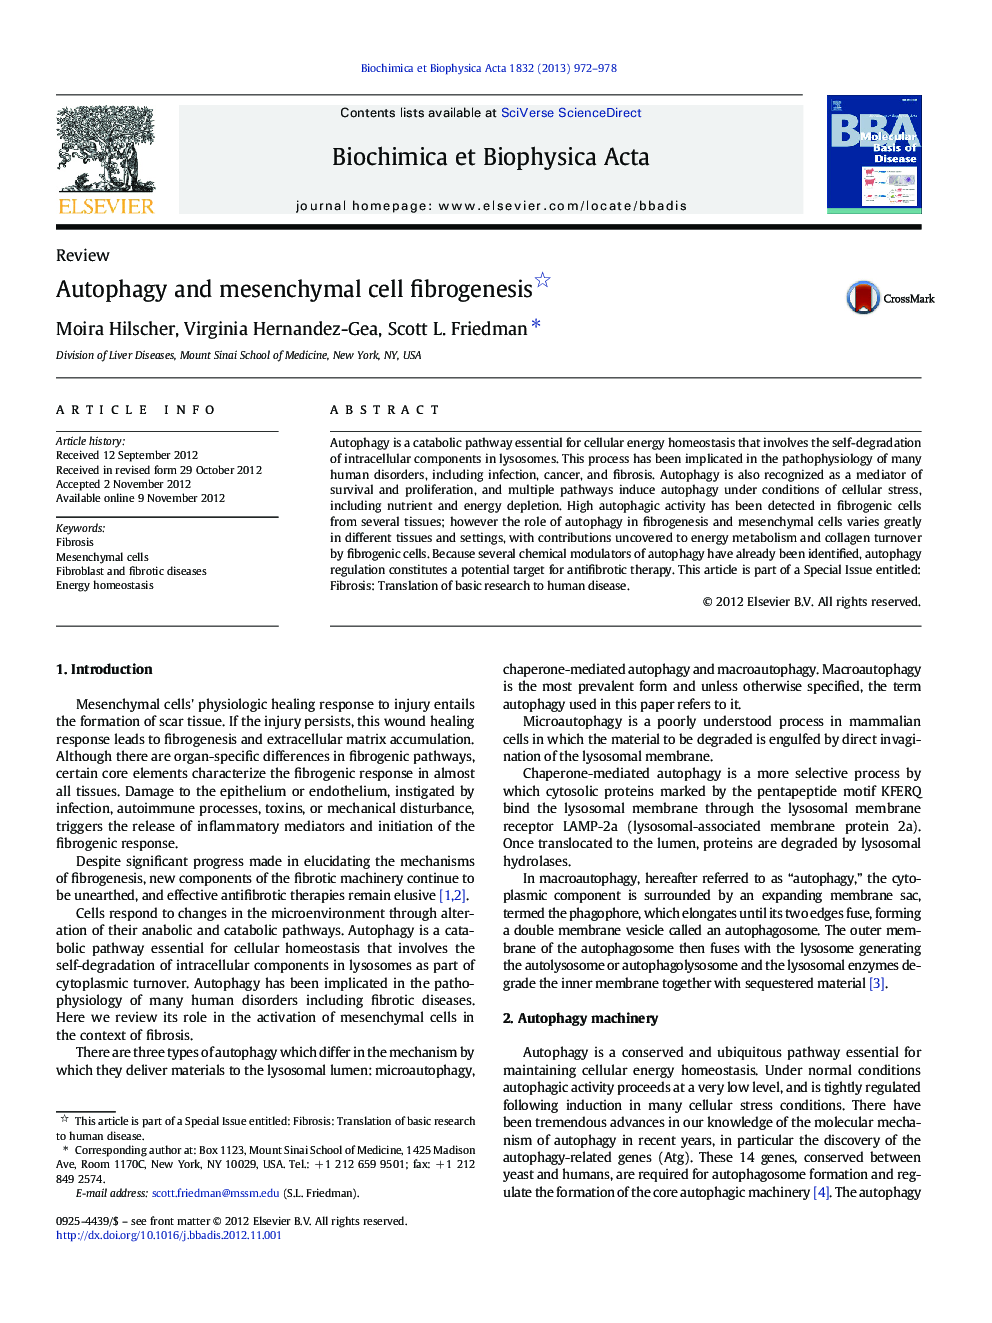 Autophagy and mesenchymal cell fibrogenesis